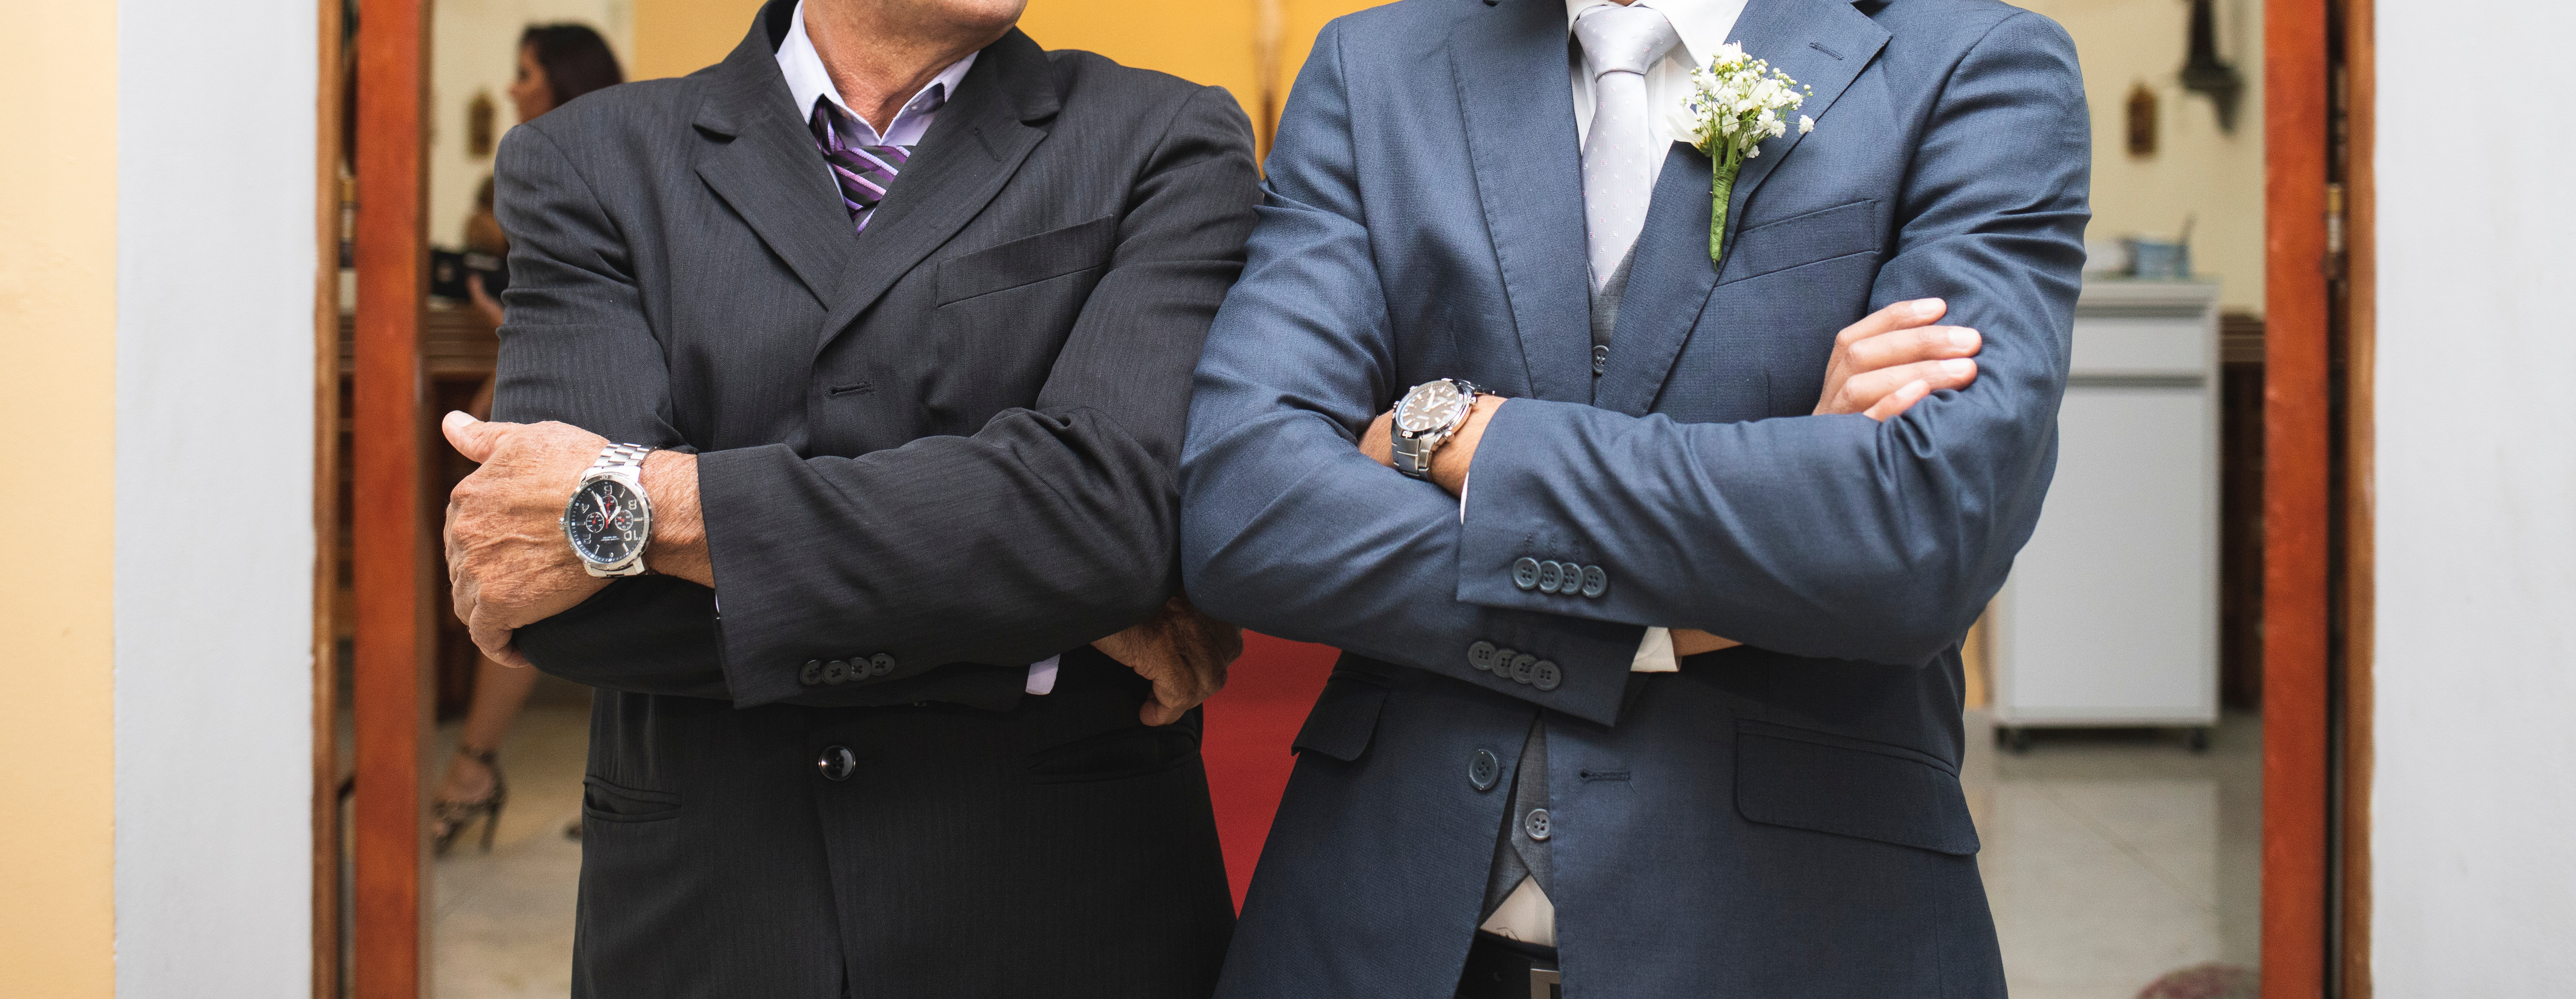 Ein Vater und ein Bräutigam an der Kirchentür | Quelle: Shutterstock